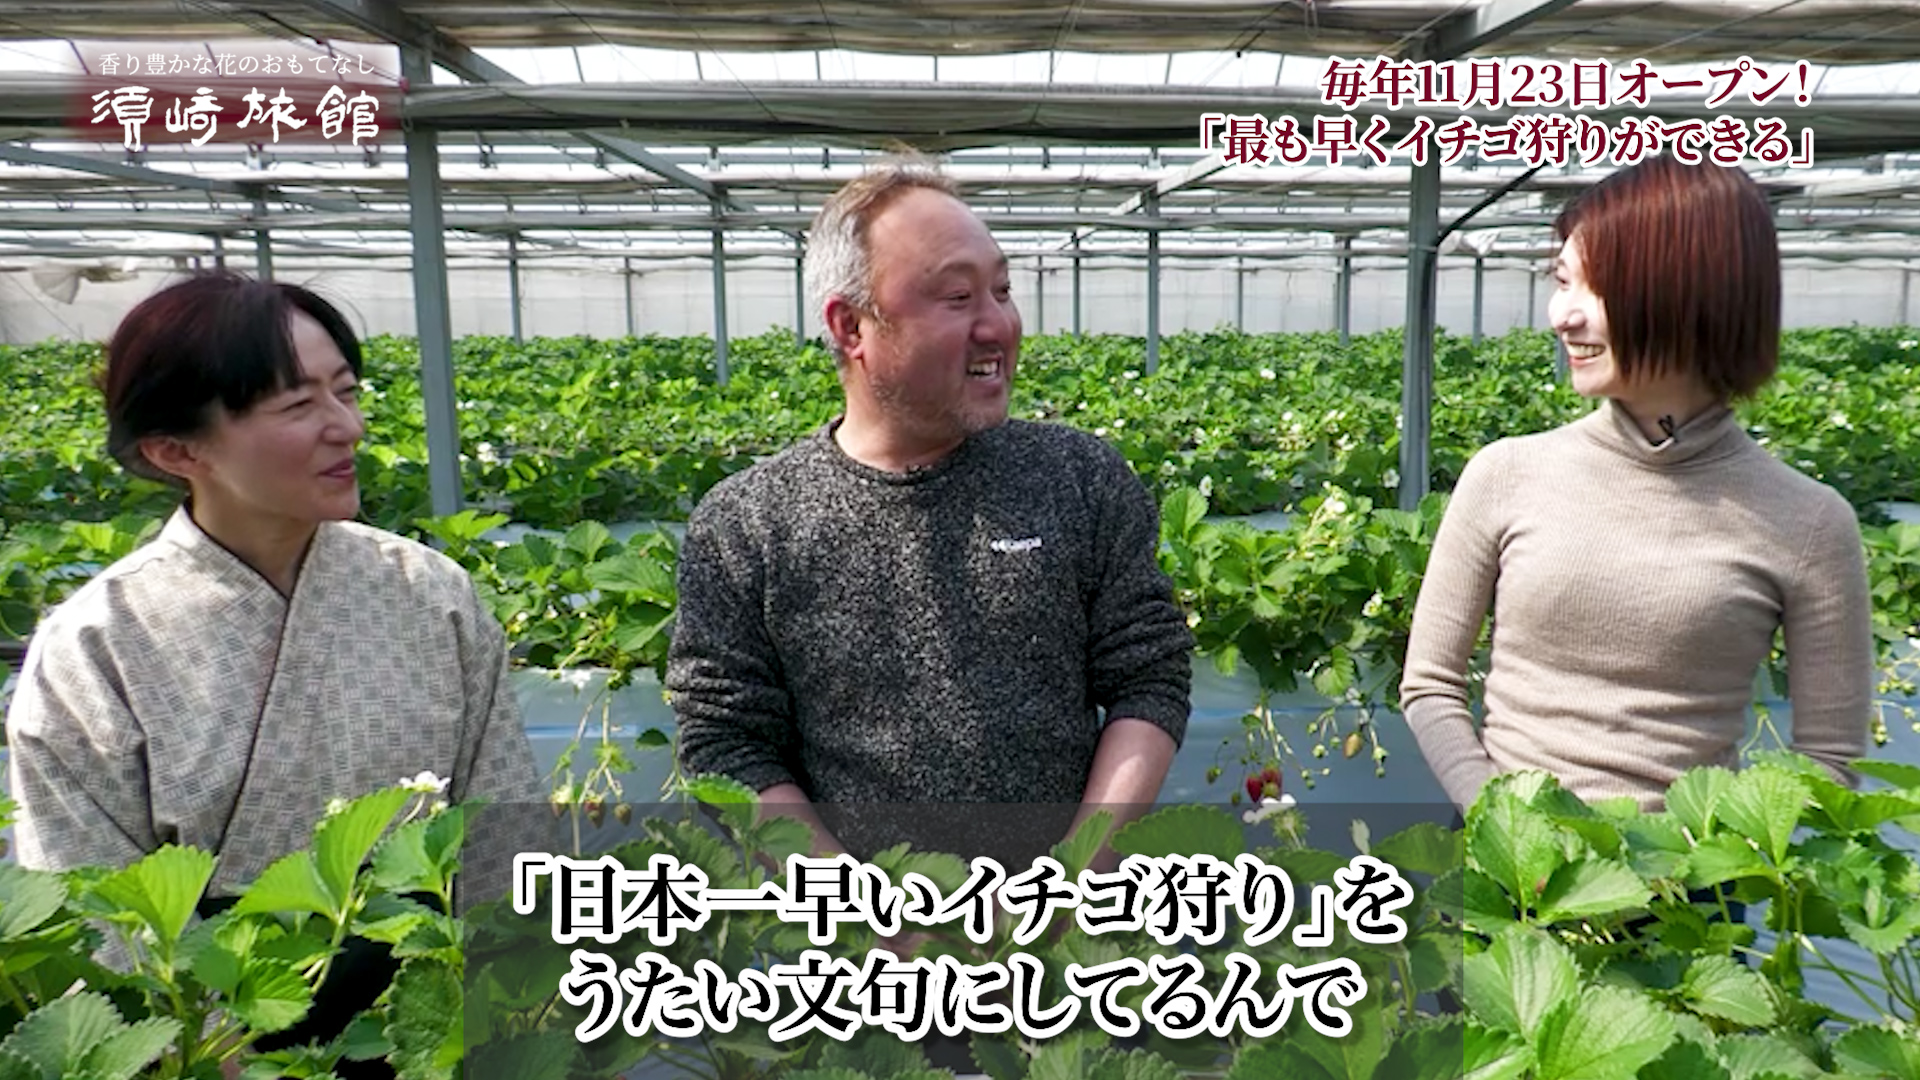 「日本一早いイチゴ狩り」を謳い文句にしている富田農園